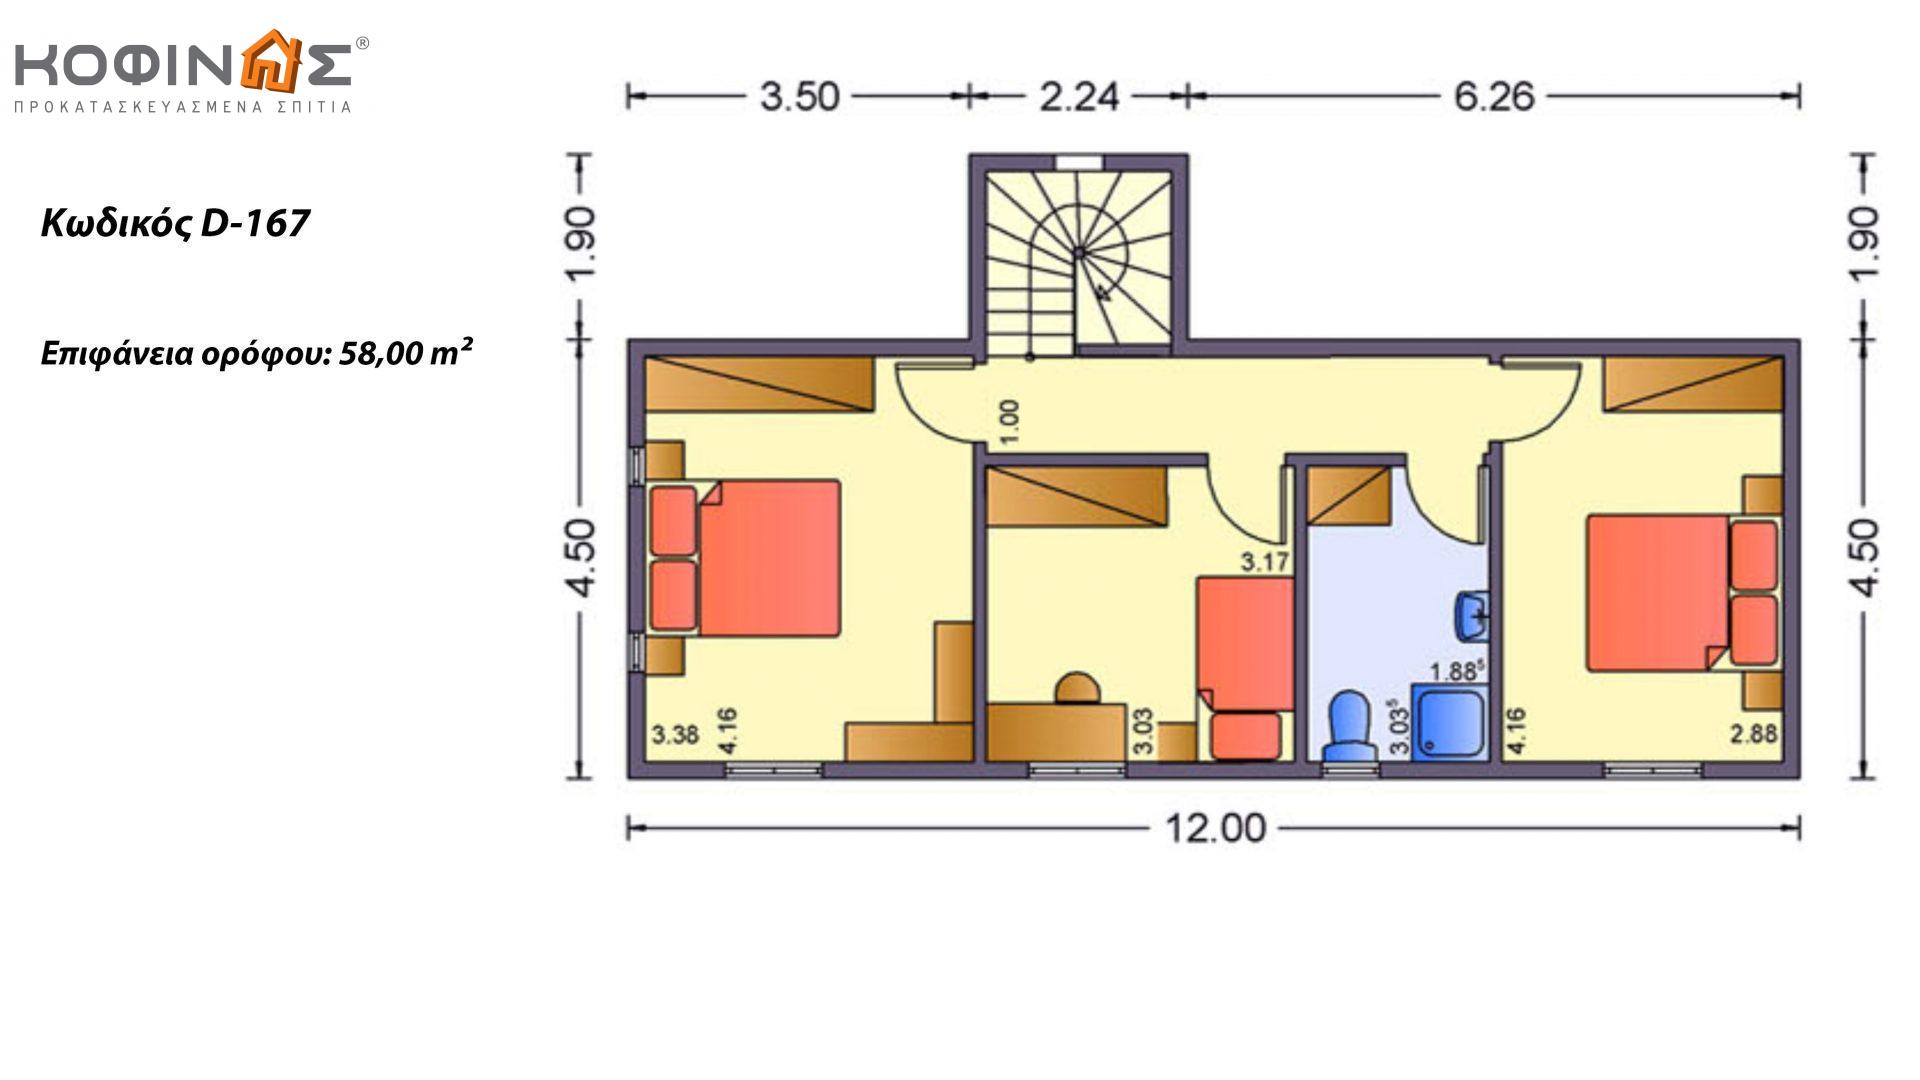 Διώροφη Κατοικία D-167, συνολικής επιφάνειας 167,00 τ.μ., συνολική επιφάνεια στεγασμένων χώρων 15.10 τ.μ.,